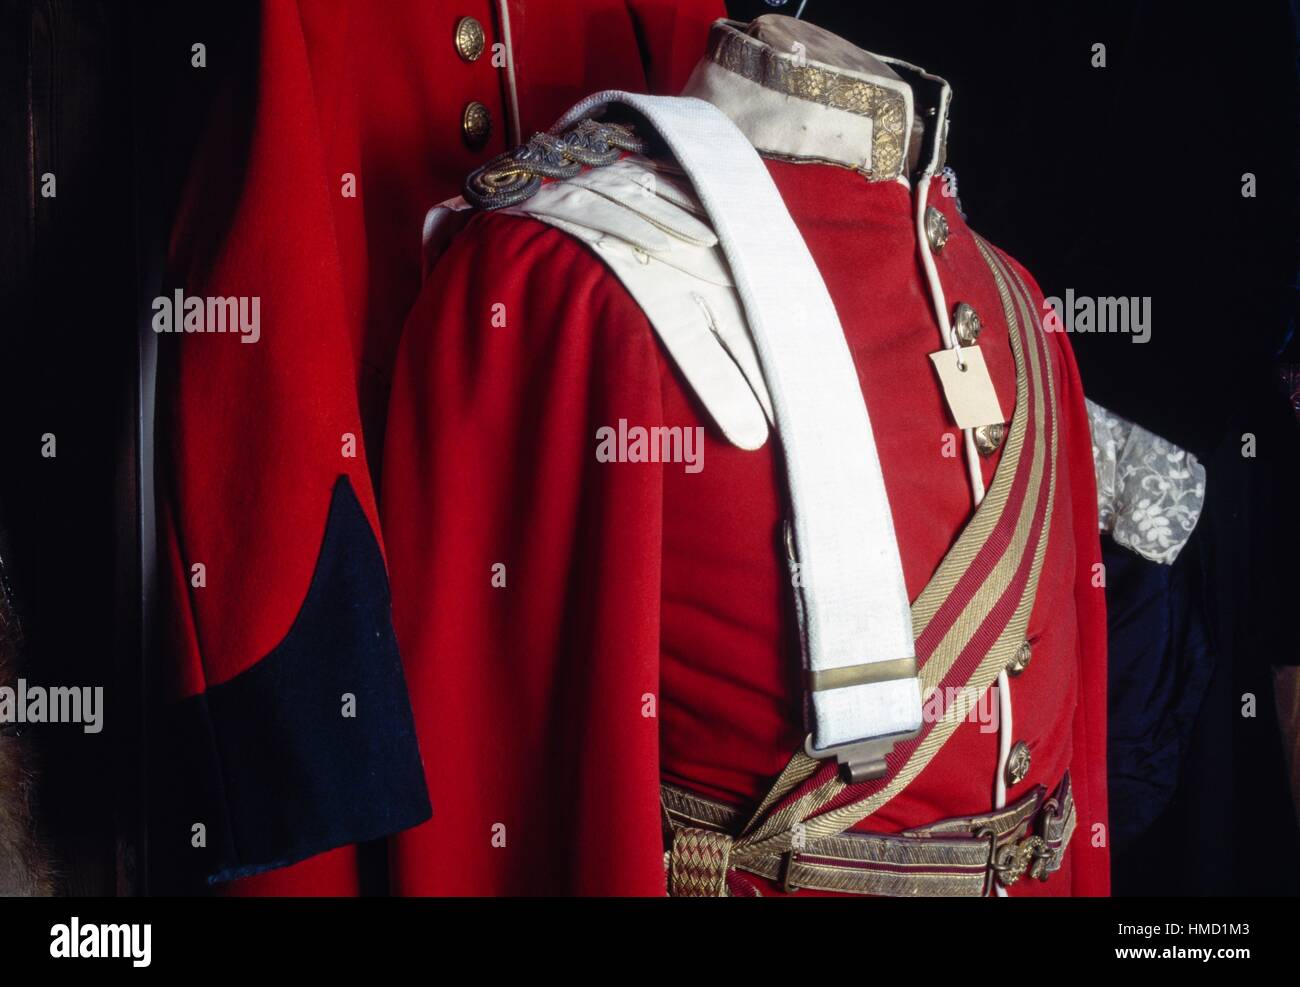 Uniforme militare in un negozio di pegni, i bygones Museum, Torbay, Inghilterra, Regno Unito. Foto Stock